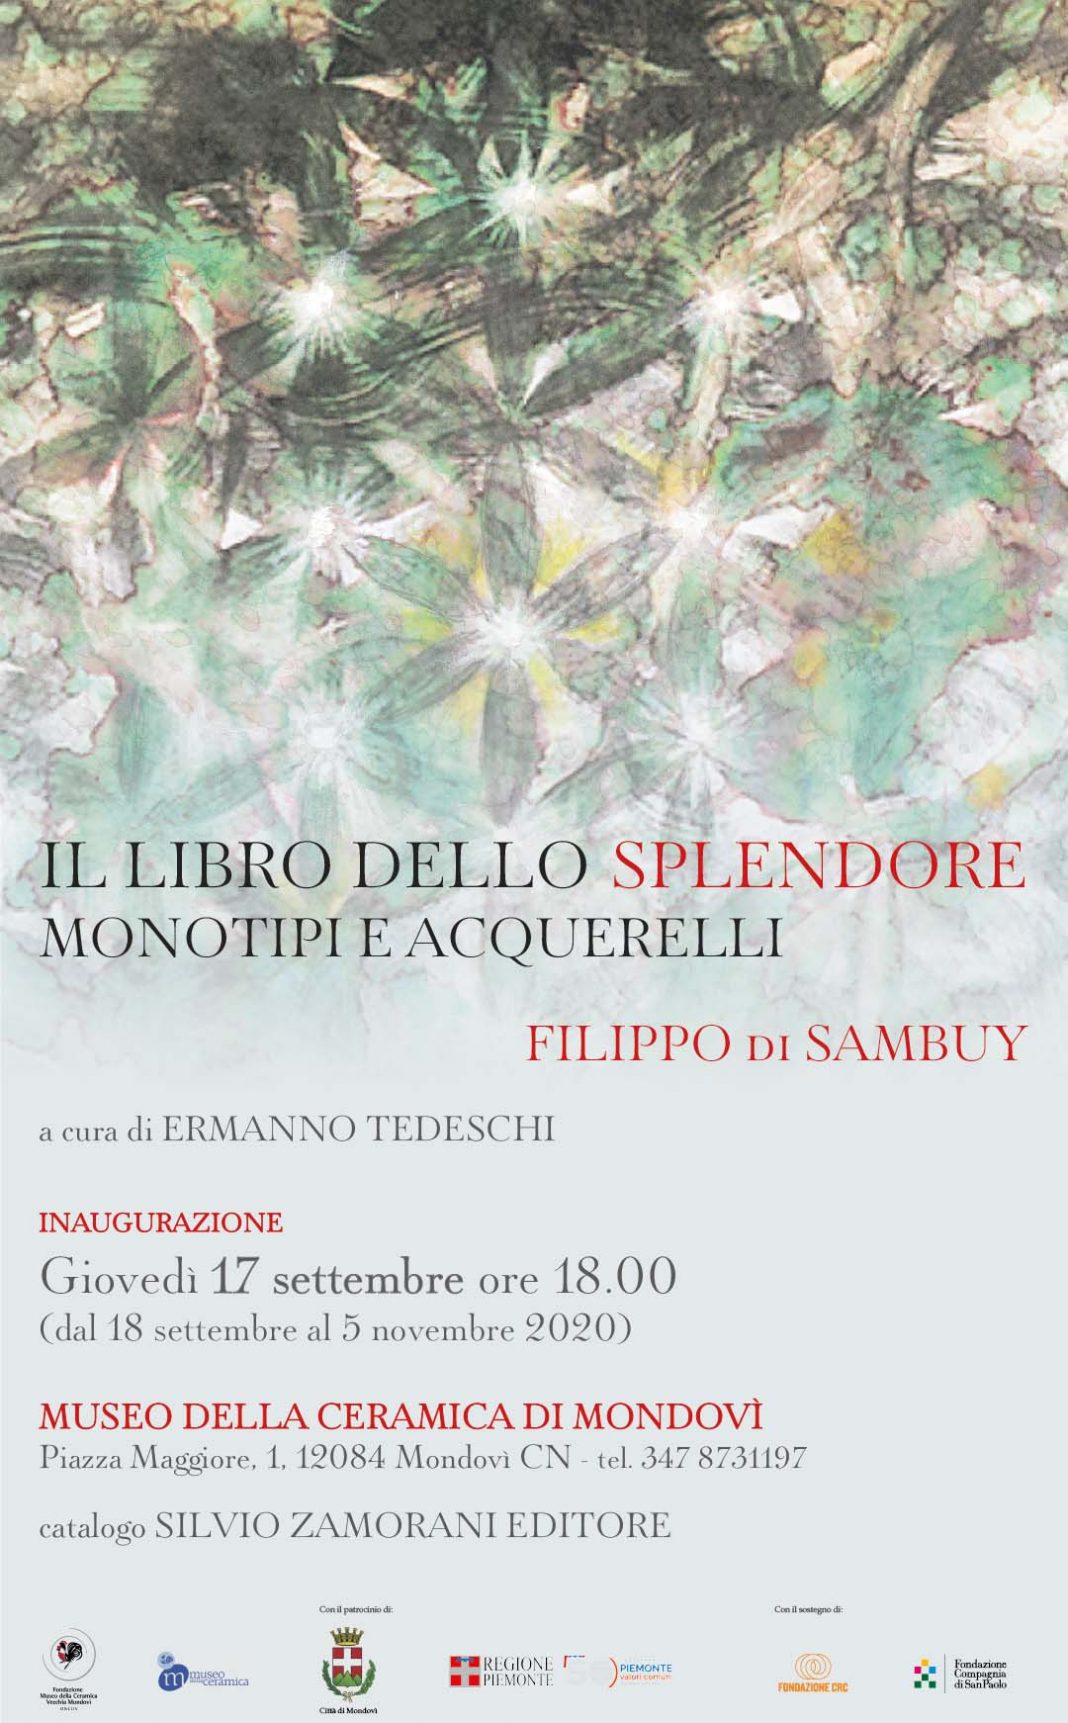 Filippo di Sambuy – Il libro dello splendore. Monotipi e acquerellihttps://www.exibart.com/repository/media/formidable/11/Invito_loghi_2_09-1-1068x1723.jpg